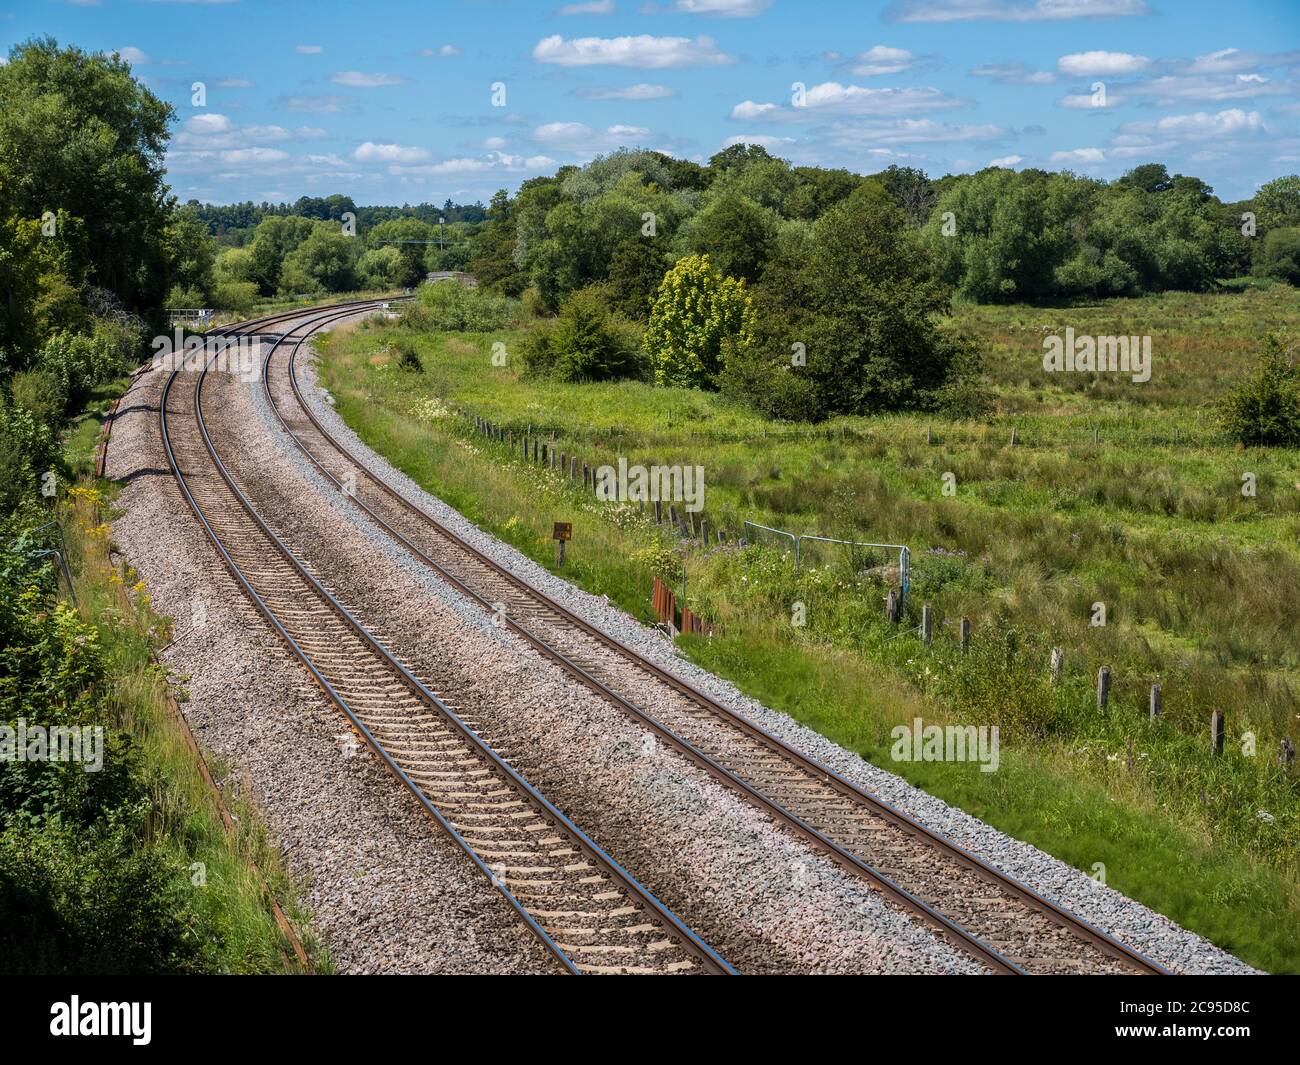 Lignes de chemin de fer, voies de chemin de fer, Kintbury, Berkshire, Angleterre, Royaume-Uni, GB. Banque D'Images